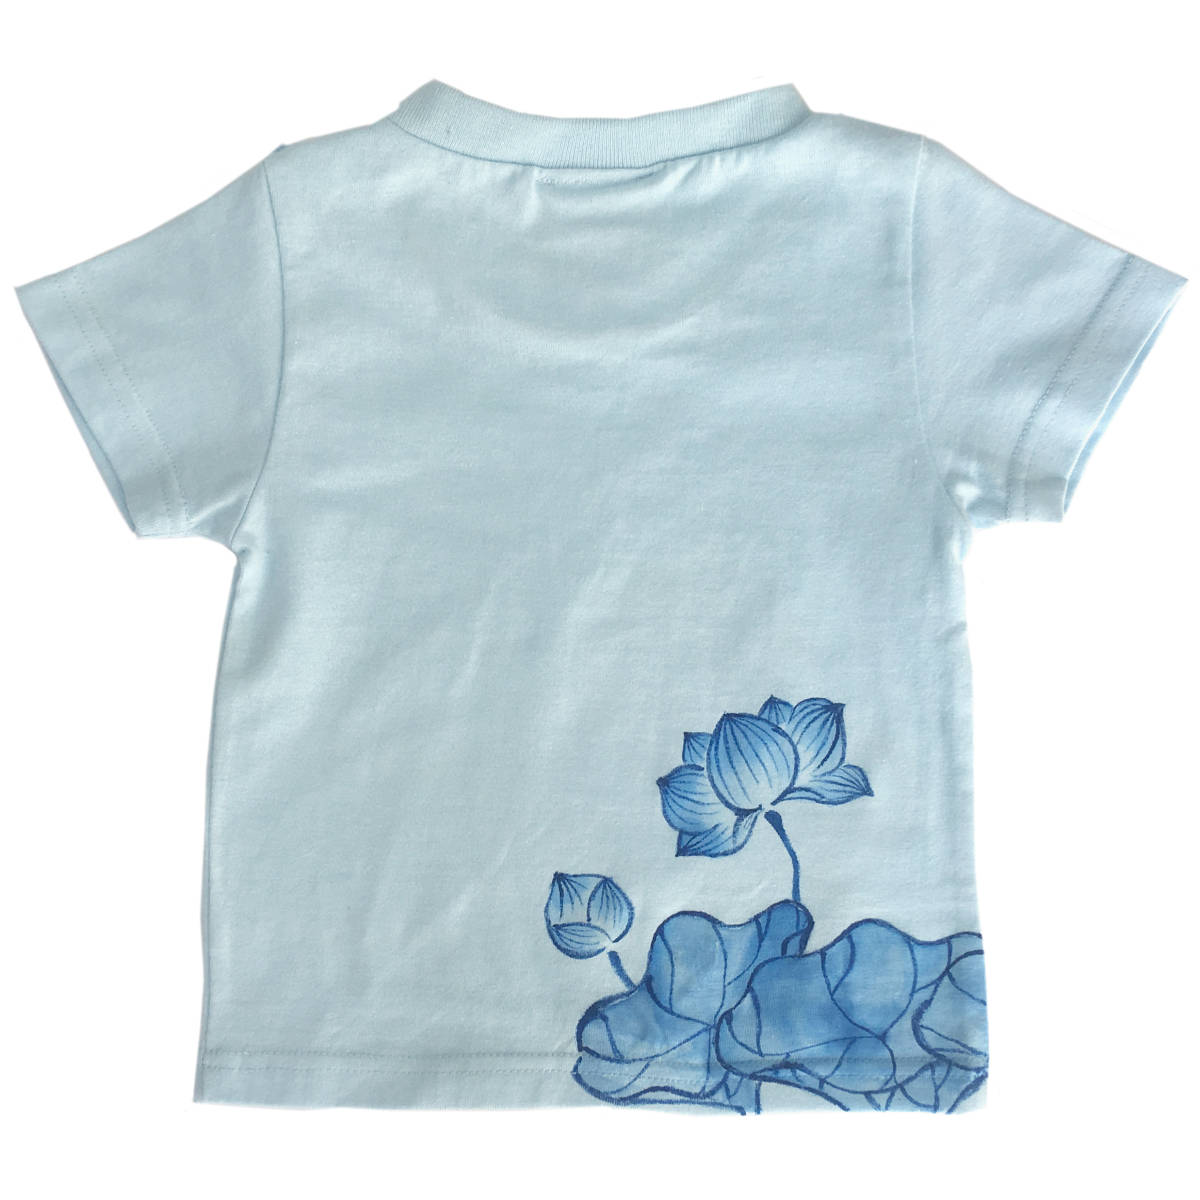 キッズ Tシャツ 140サイズ ブルー 蓮柄Tシャツ 手描きで描いた蓮の花柄Tシャツ 半袖 和柄 和風 レトロ ハンドメイド